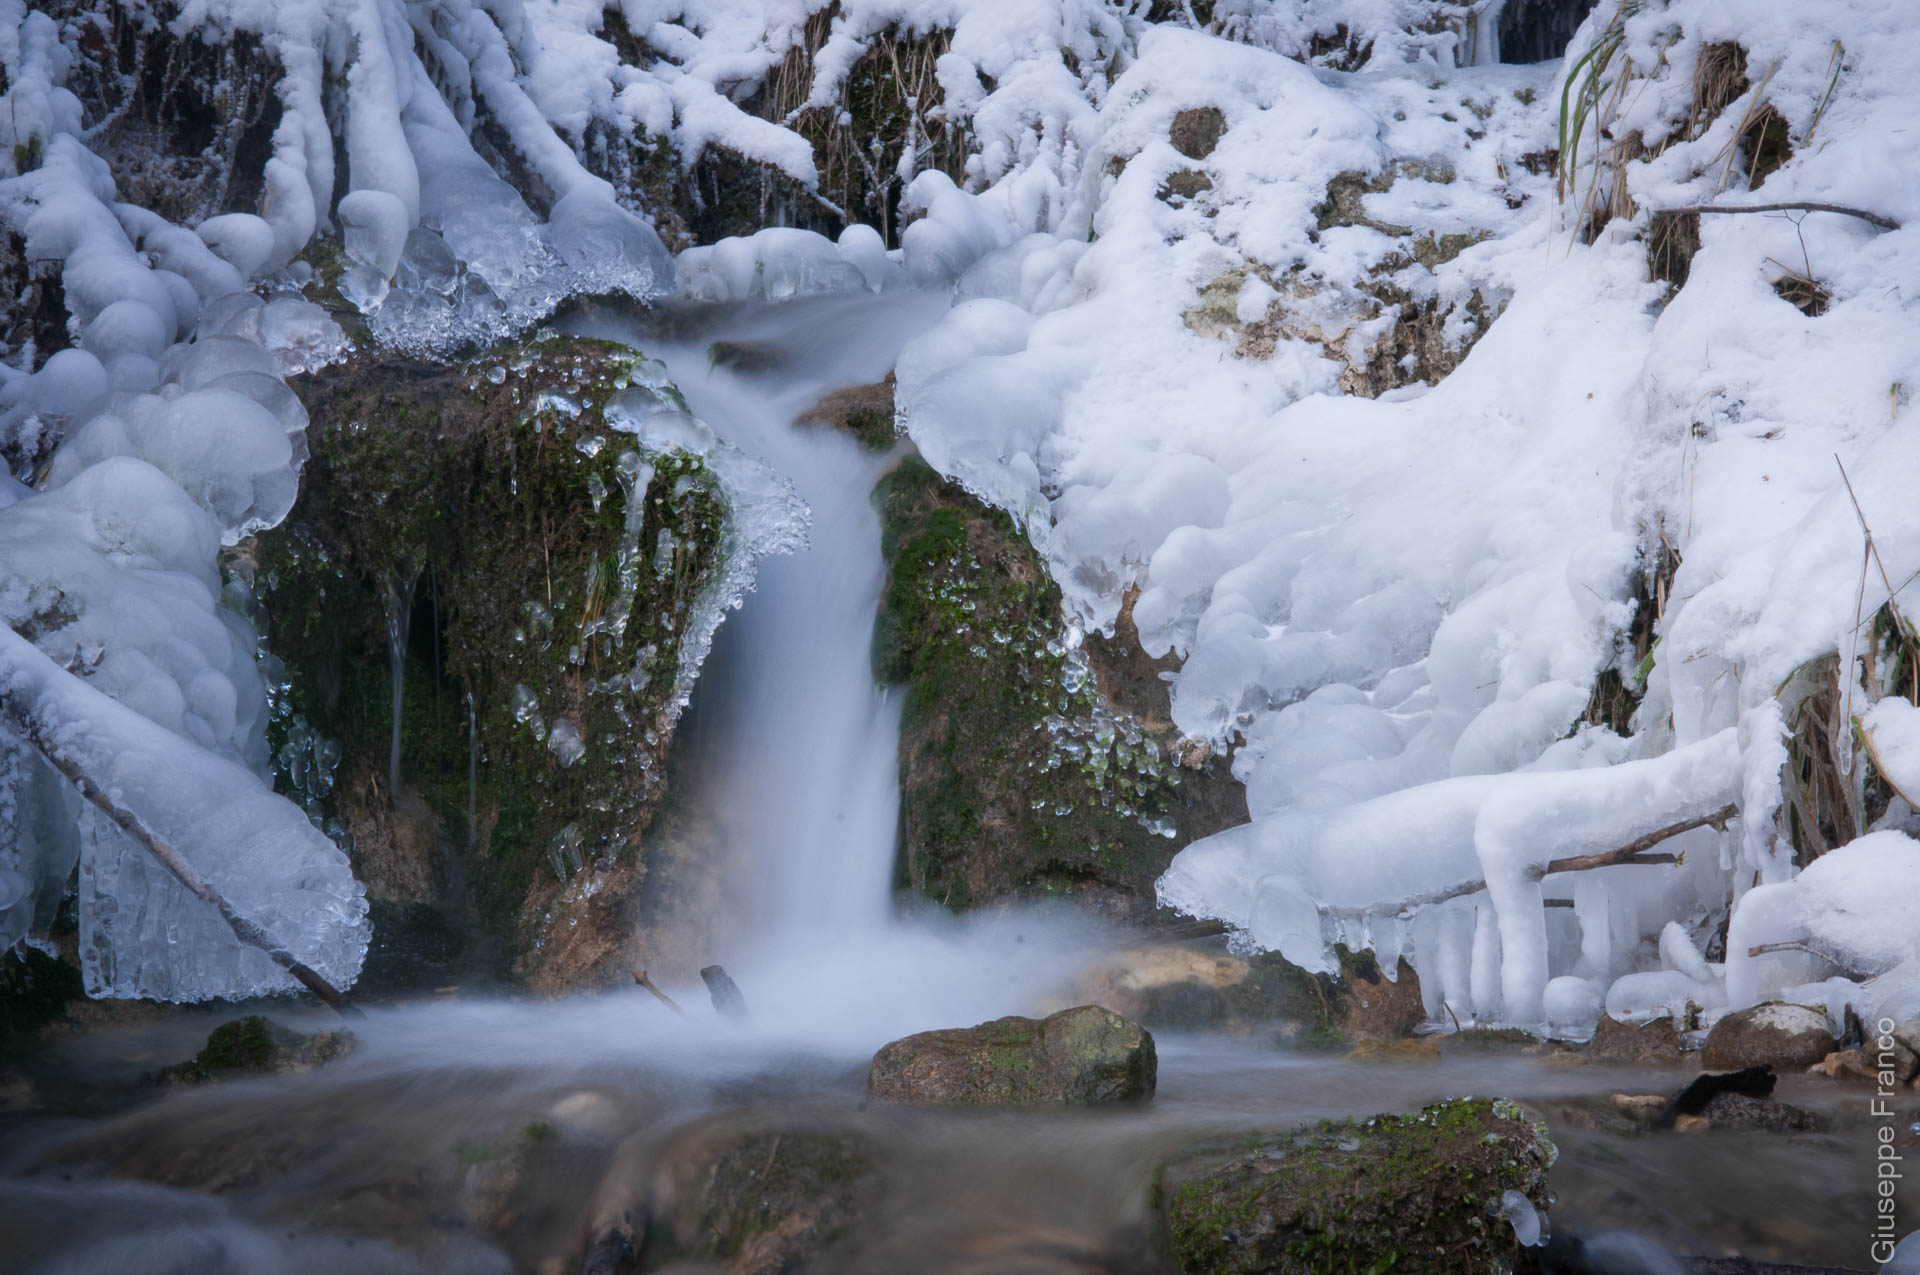 Long exposure of a half frozen stream.